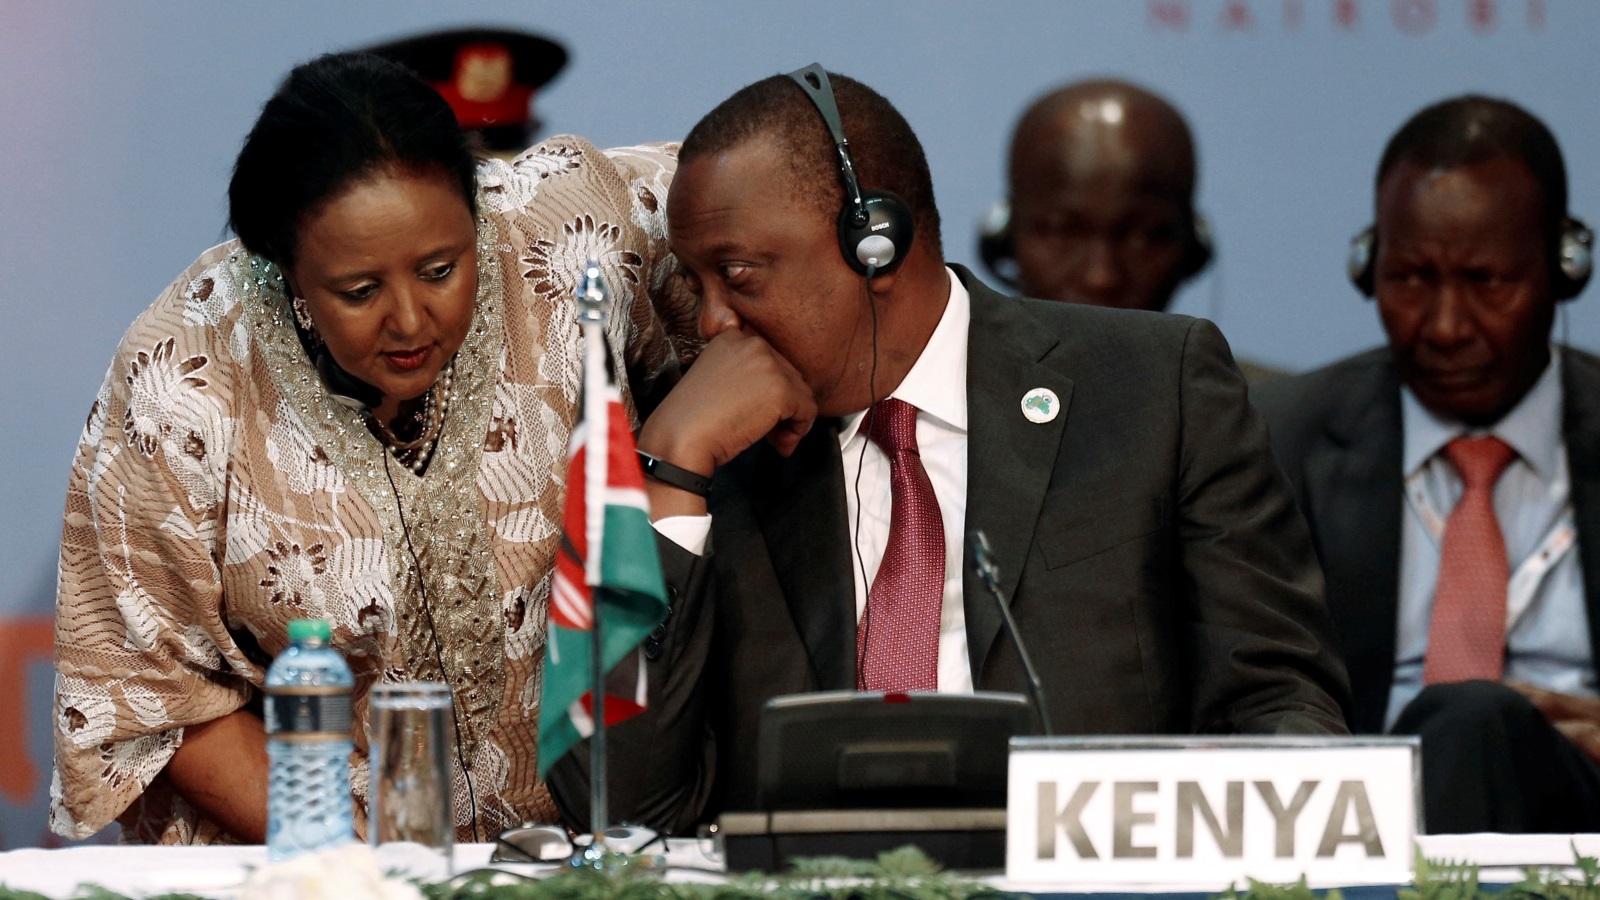 أوهورو كينياتا، رئيس كينيا الحالي، هو المالك المباشر لمجموعة إعلامية تضم صحفا وقنوات إذاعية ومحطات تلفزيونية (رويترز)